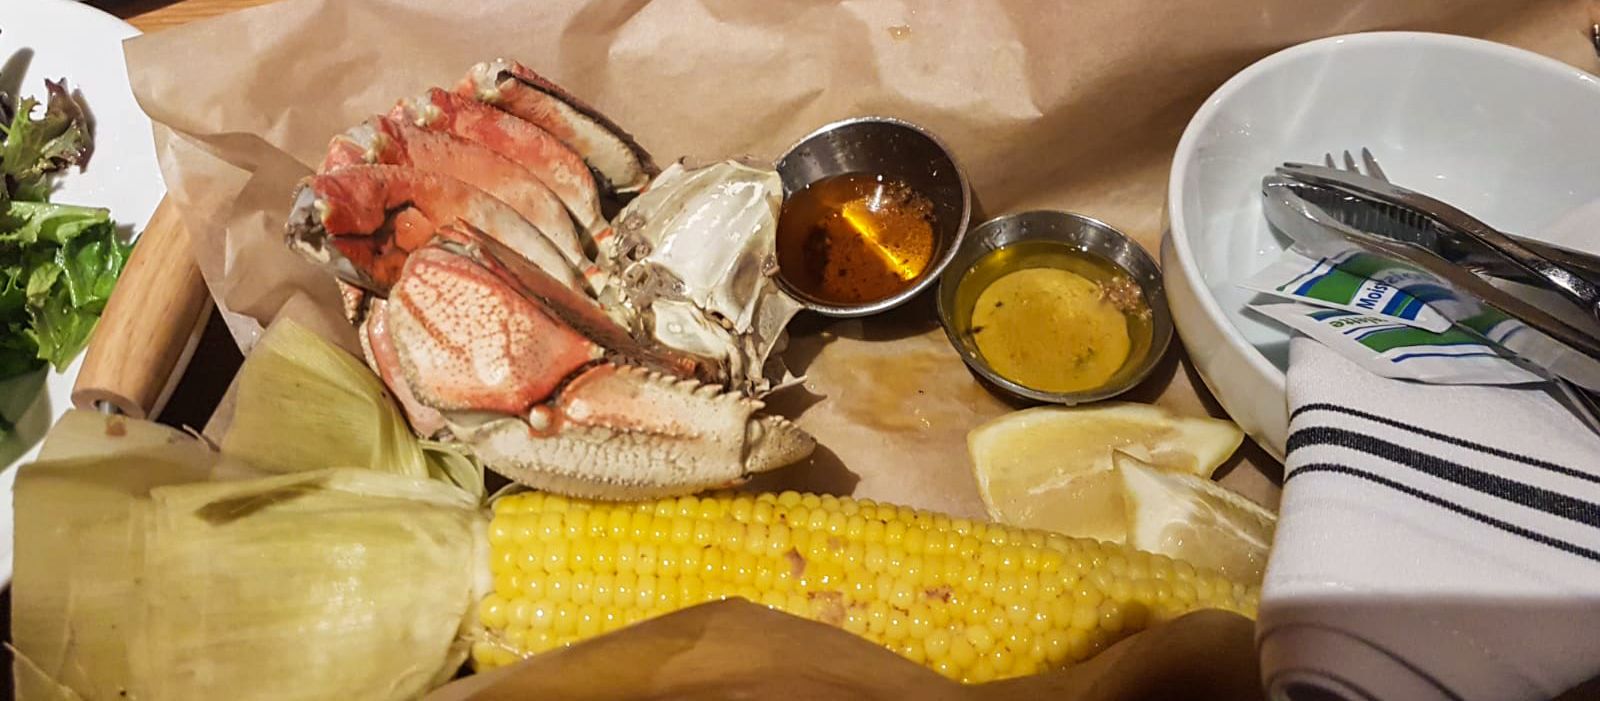 Krabbe mit geschmolzener Butter und Maiskolben im Clearwater Restaurant, Oregon